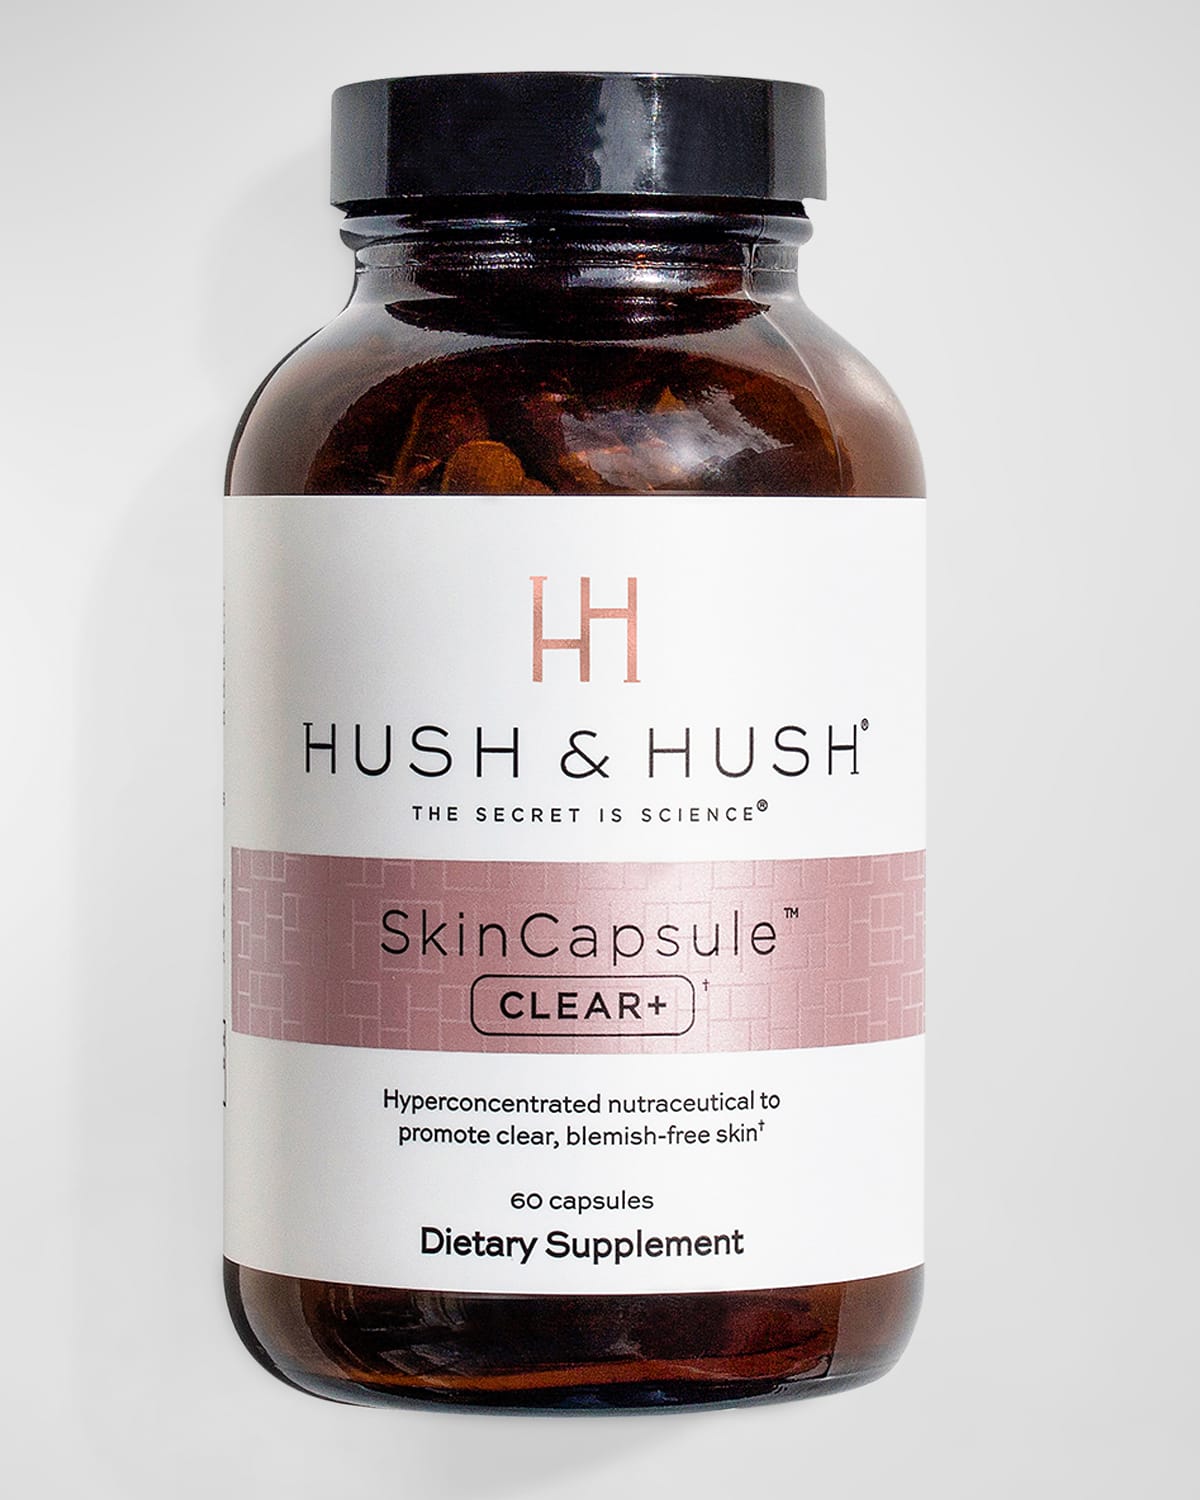 SkinCapsule CLEAR+ Supplement - 60 Capsules